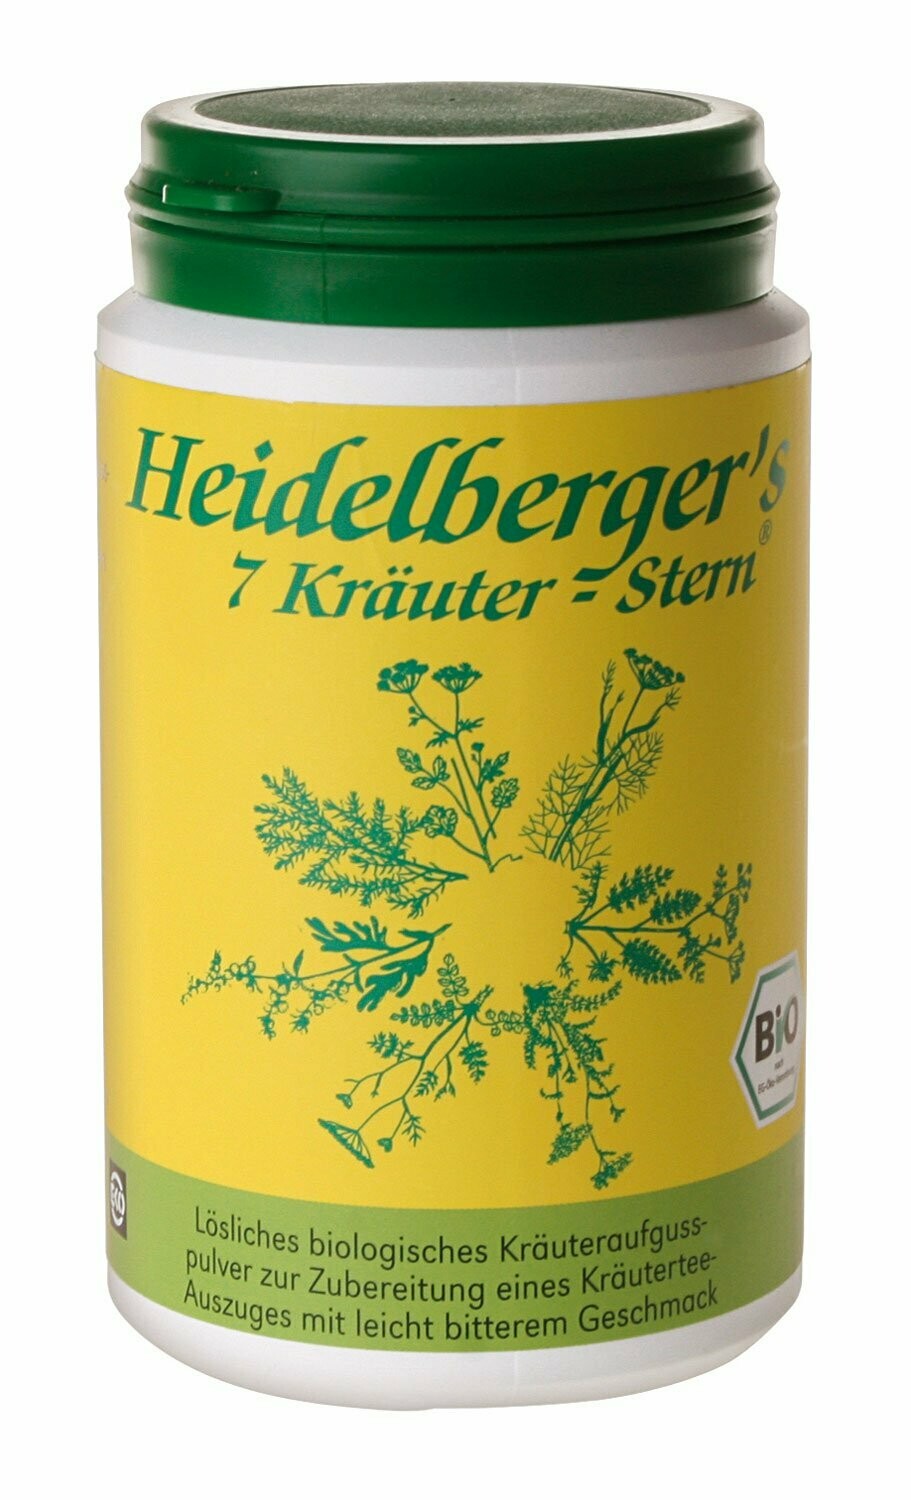 Heidelberger´s 7 Kräuter-Stern 100 g, Pulver,
das Original!